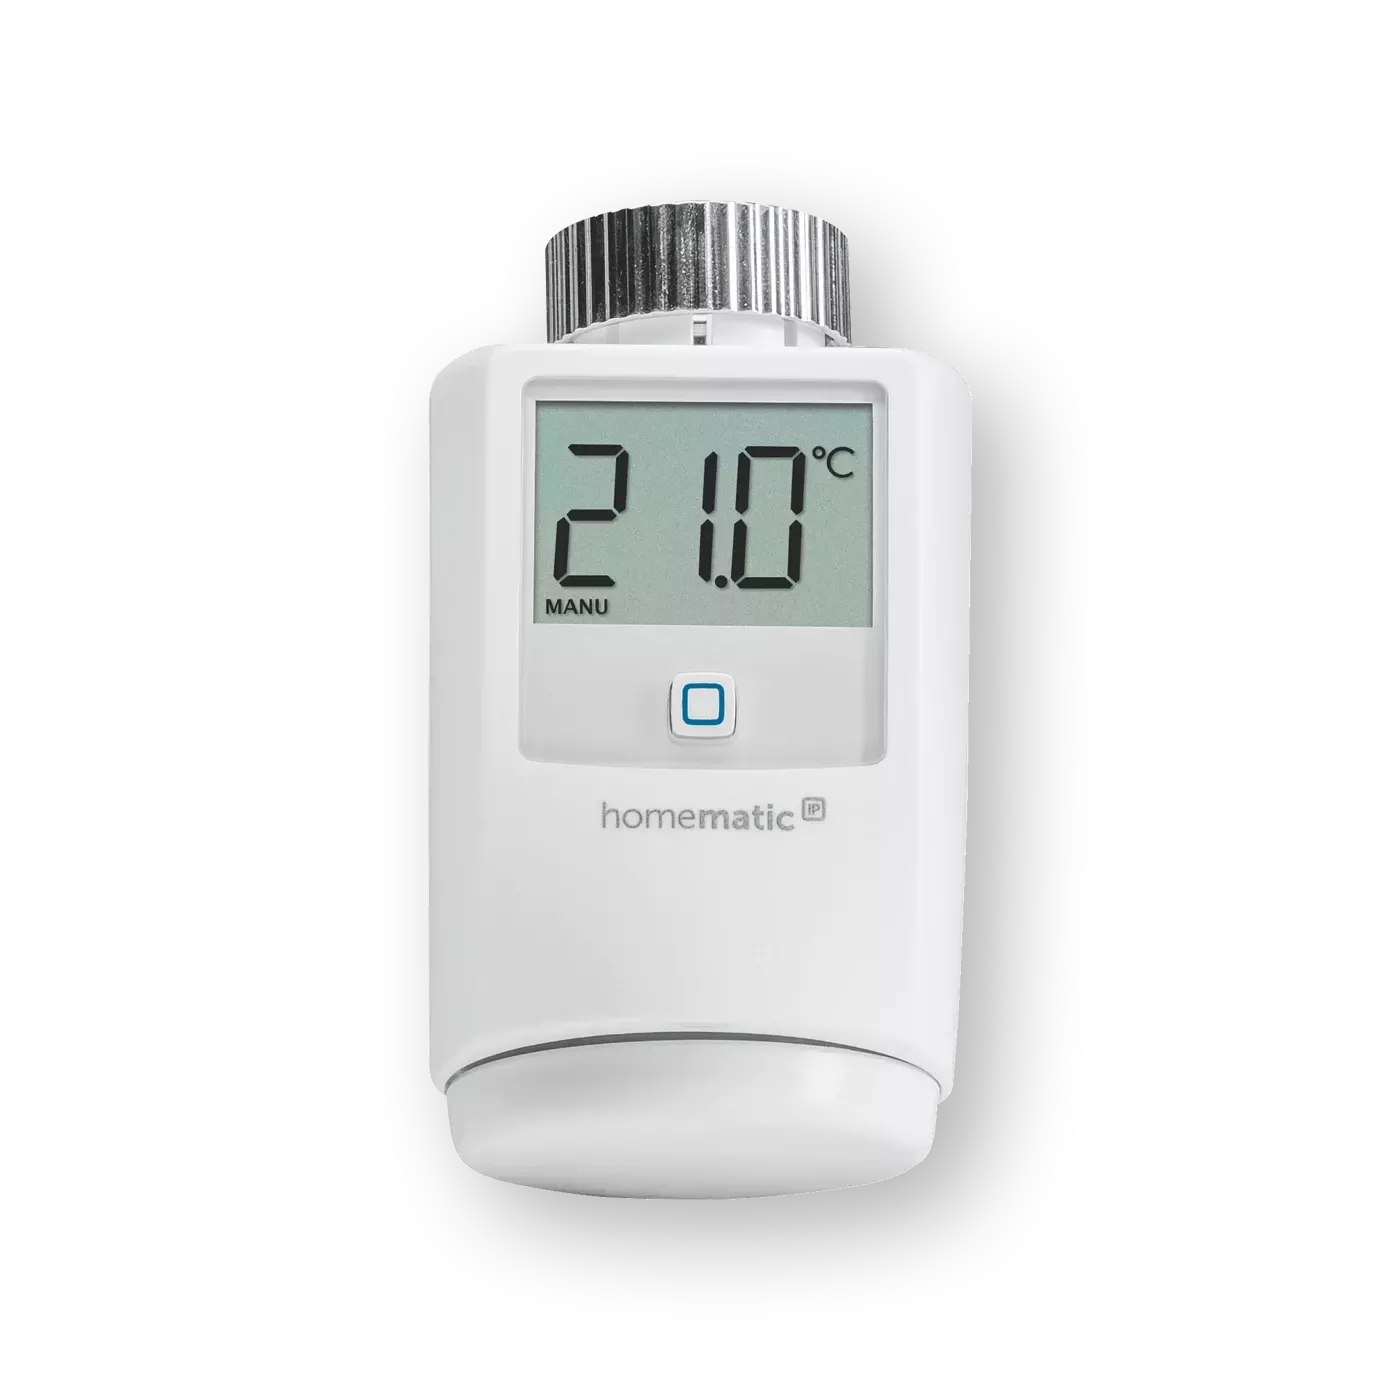 Heizkörperthermostat: Smarte Heizungssteuerung | Homematic IP